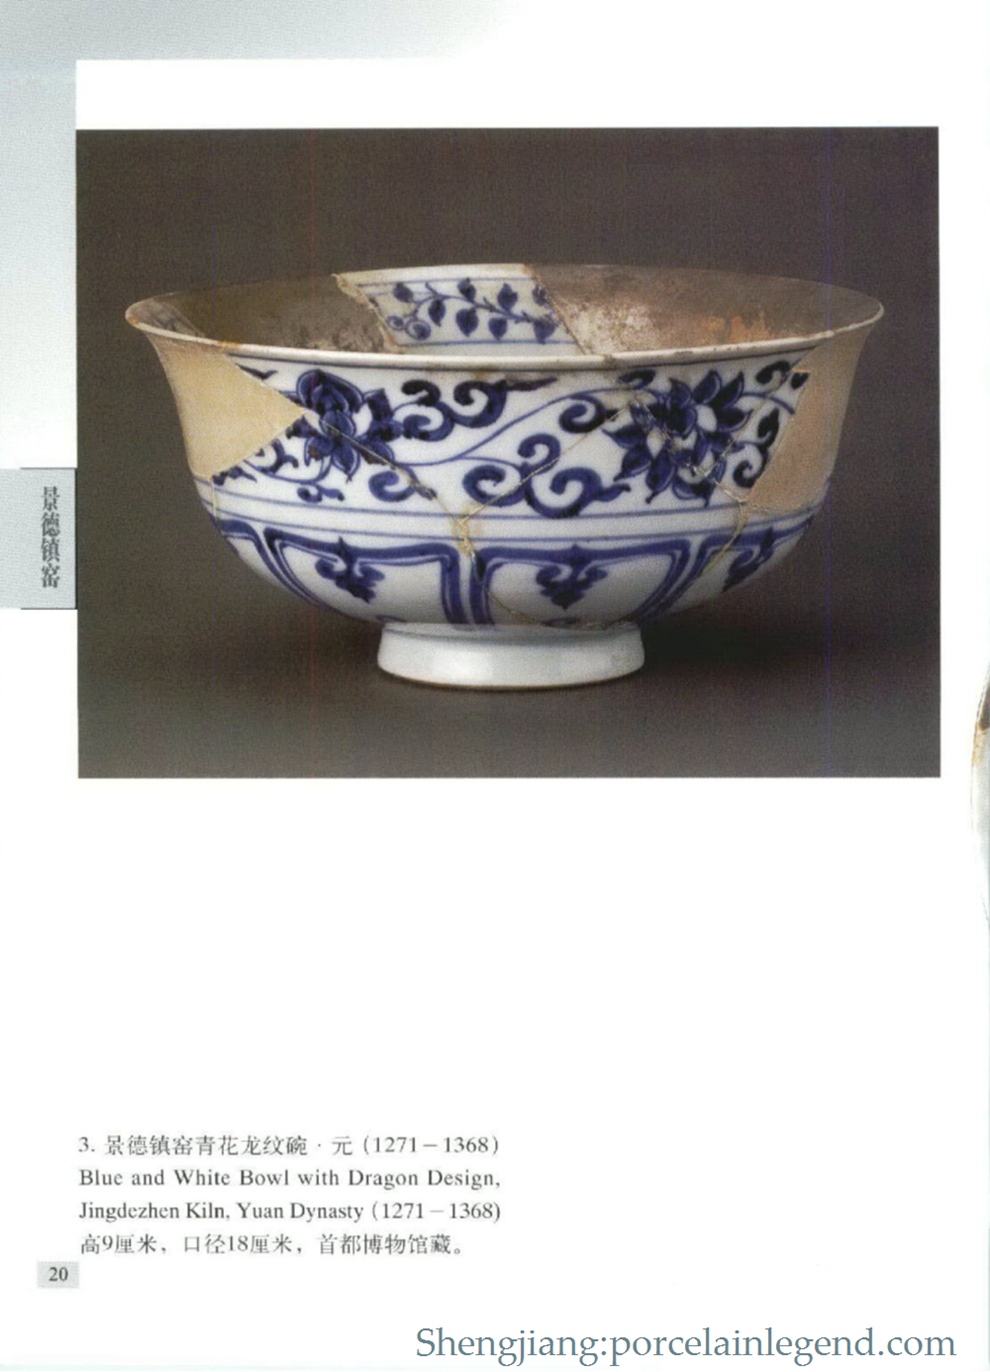 Blue and White Bowl with Dragon Design,Jingdezhen Kiln,Yuan Dynasty(1271-1368)